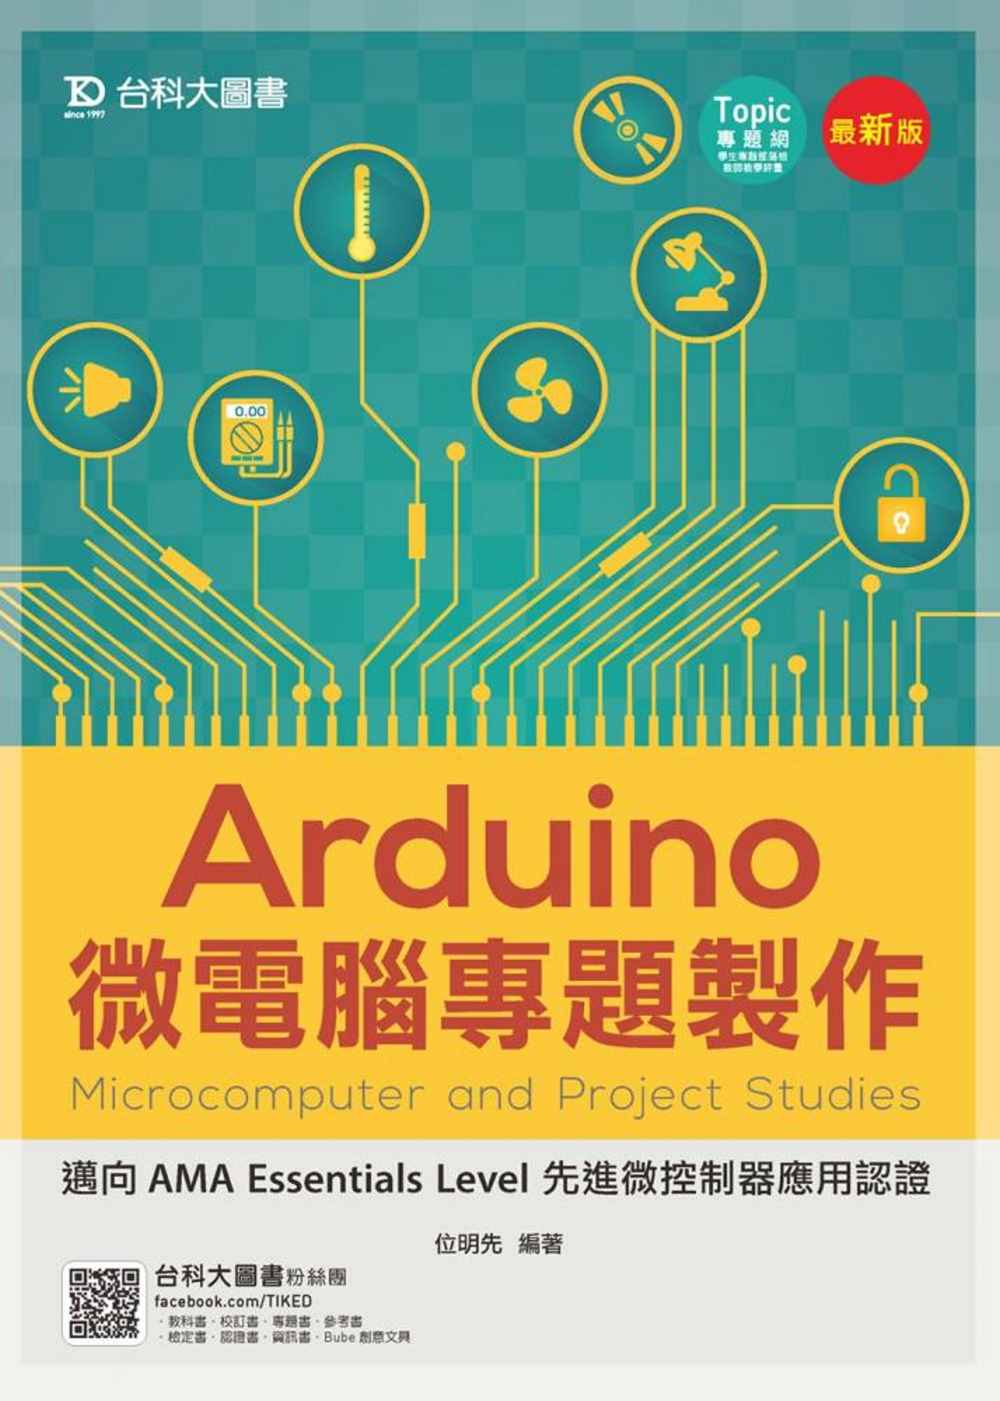 Arduino微電腦專題製作 - 邁向AMA Essenti...